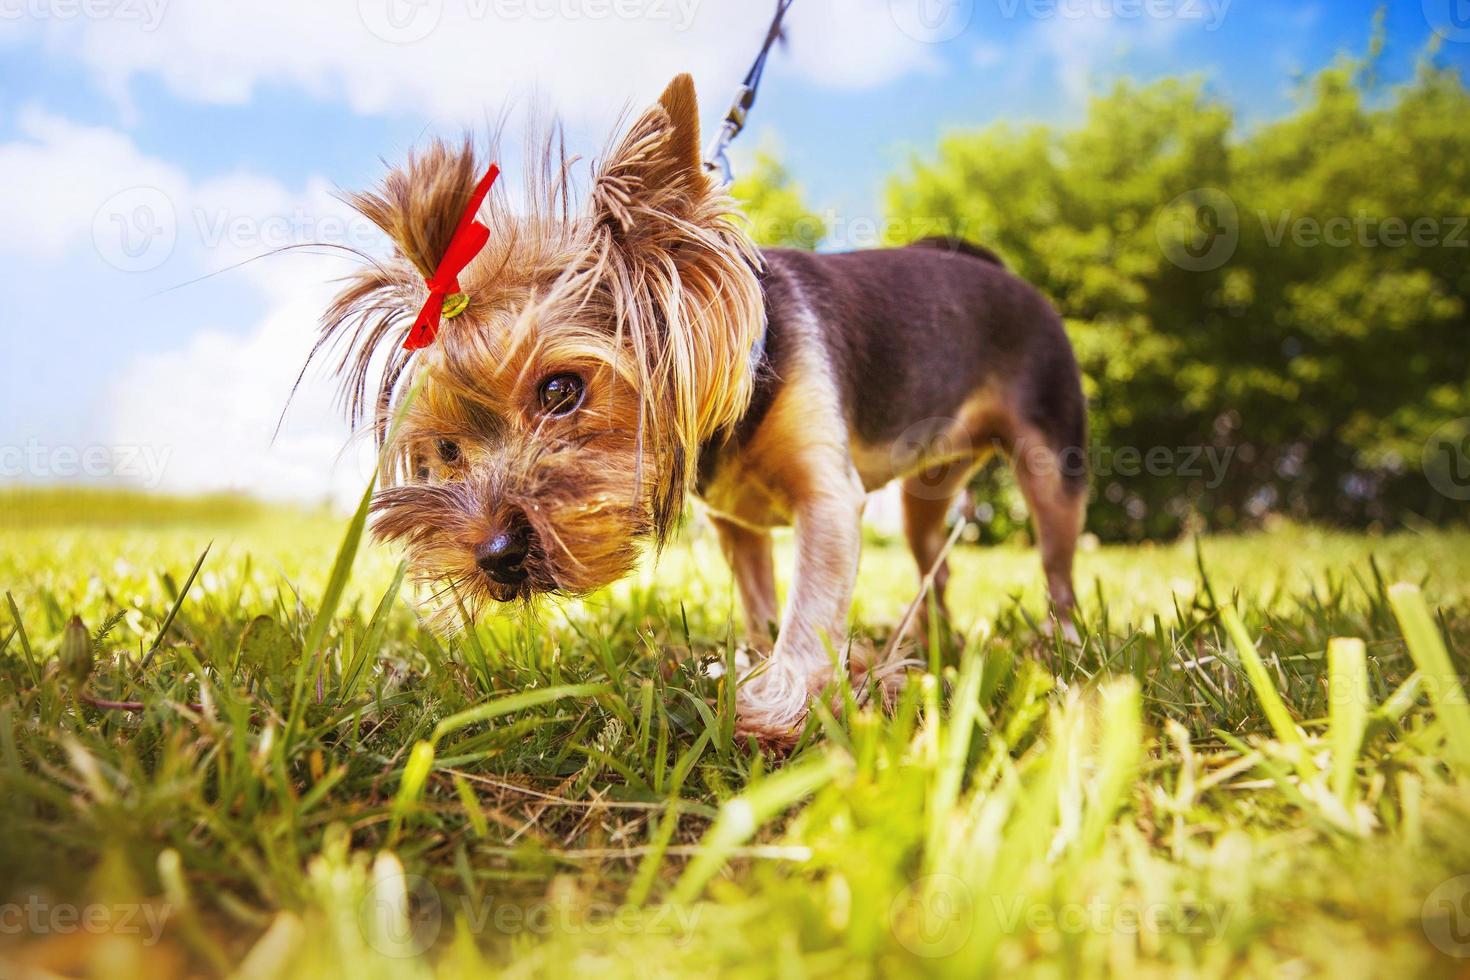 weinig hond wandelingen in de park. een portret van een yorkshire terriër foto